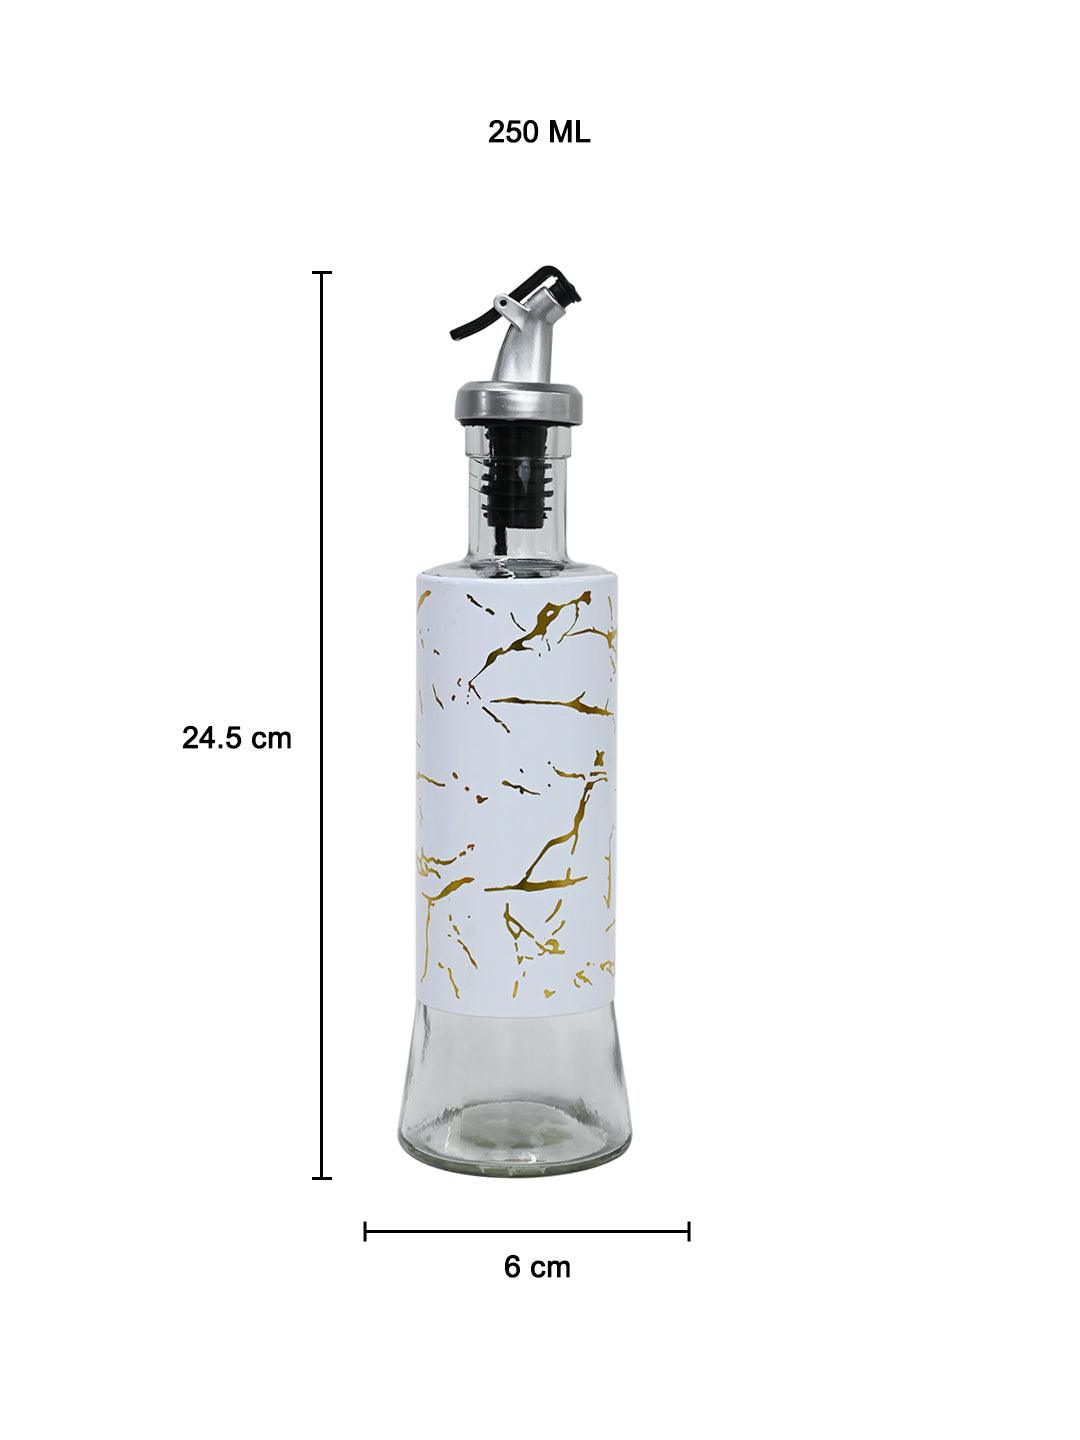 https://market99.com/cdn/shop/files/oil-dispenser-250ml-white-oil-and-vinegar-dispensers-5_2048x.jpg?v=1697016601